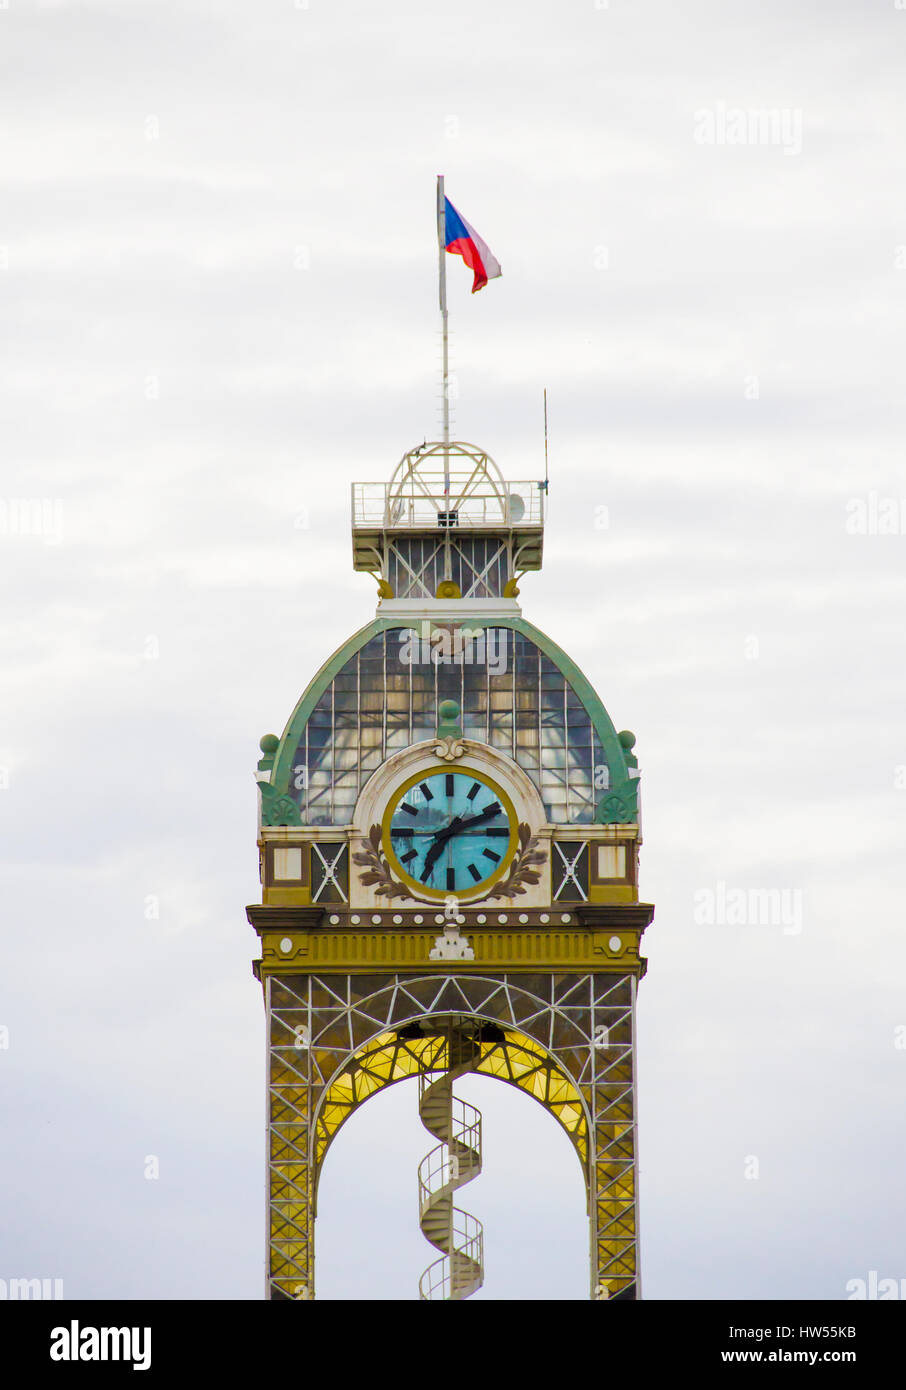 Tour de l'horloge avec escalier en spirale dans un bâtiment à Prague, République Tchèque Banque D'Images